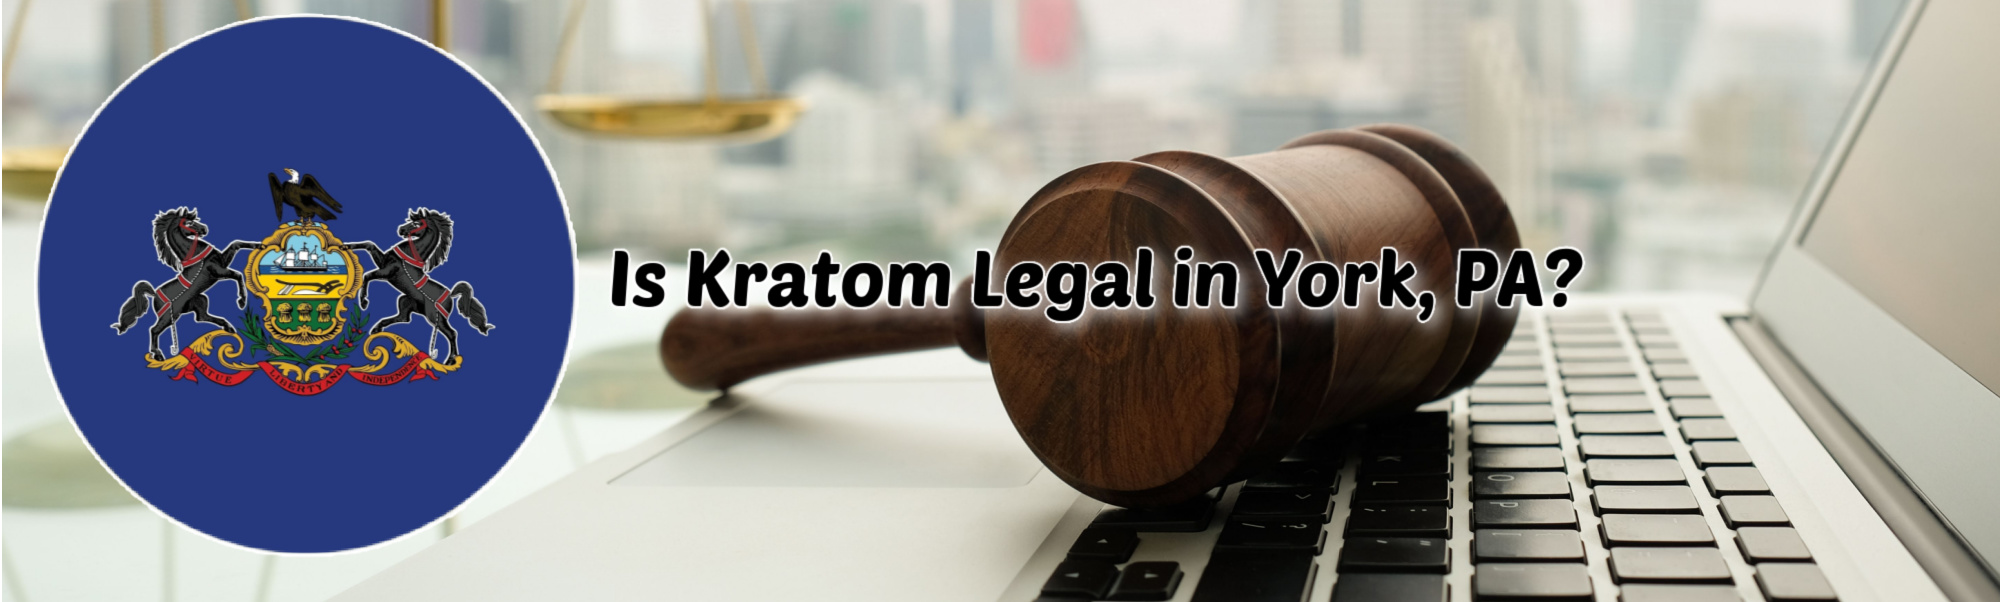 image of is kratom legal in york pa